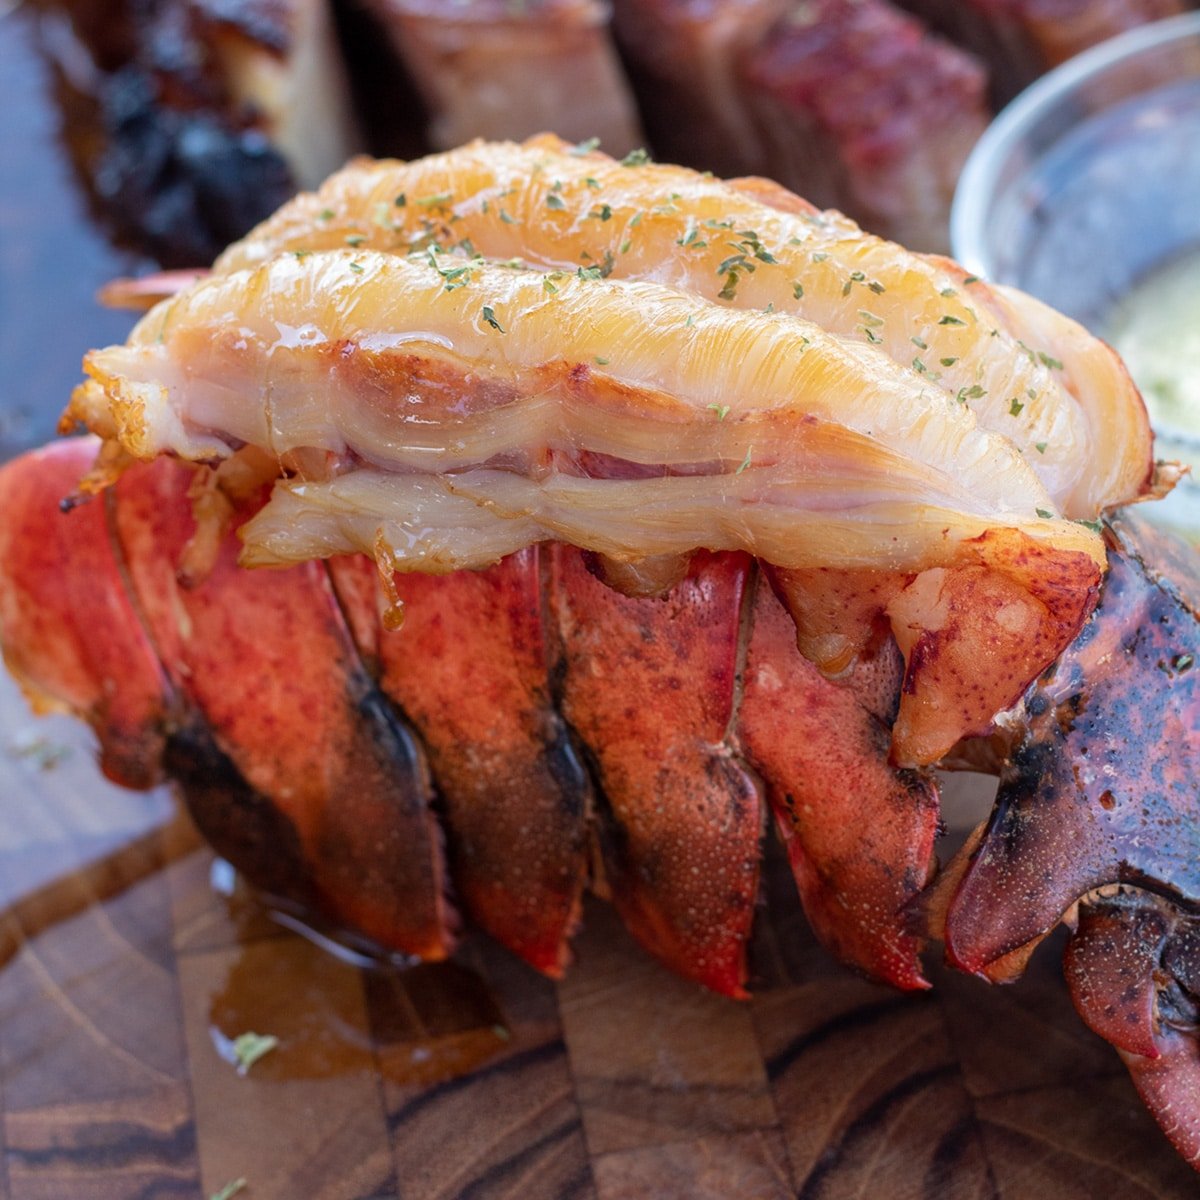 Gambar persegi ekor lobster asap pada talenan kayu dengan mentega cair.